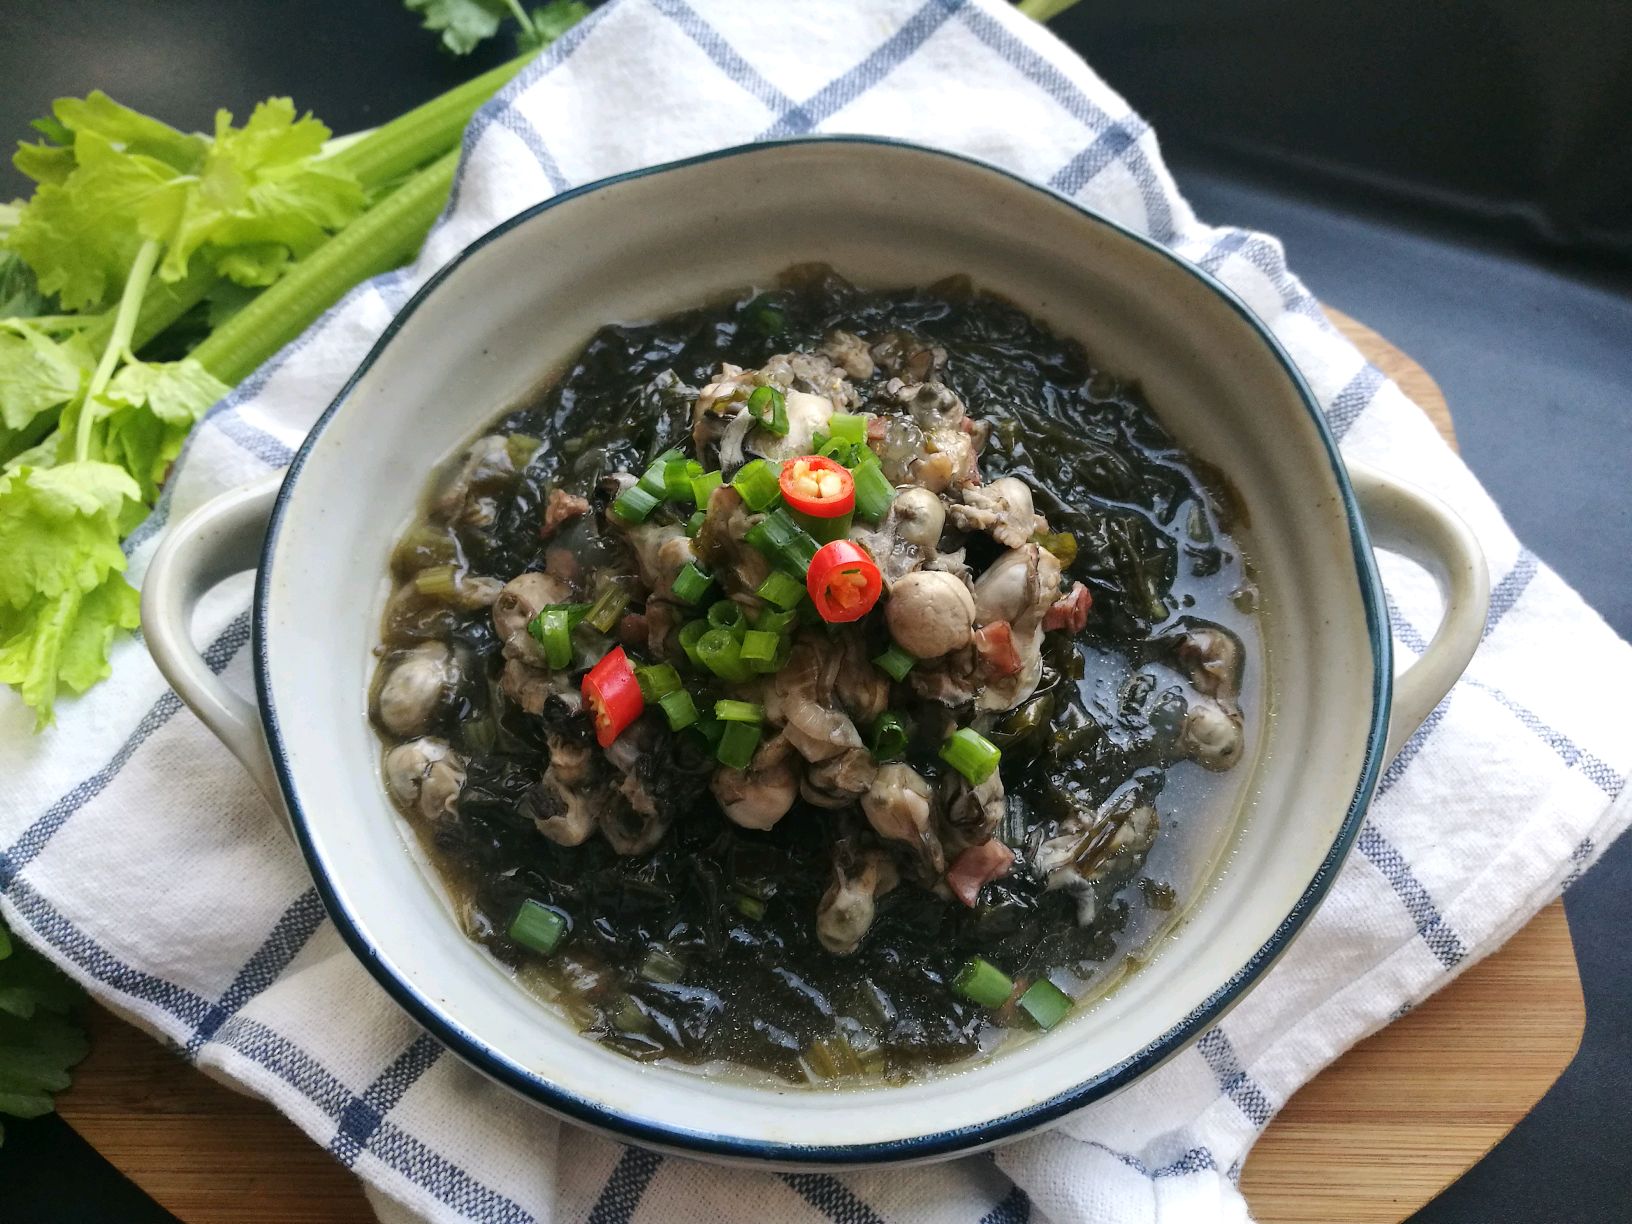 海蛎豆腐汤做法